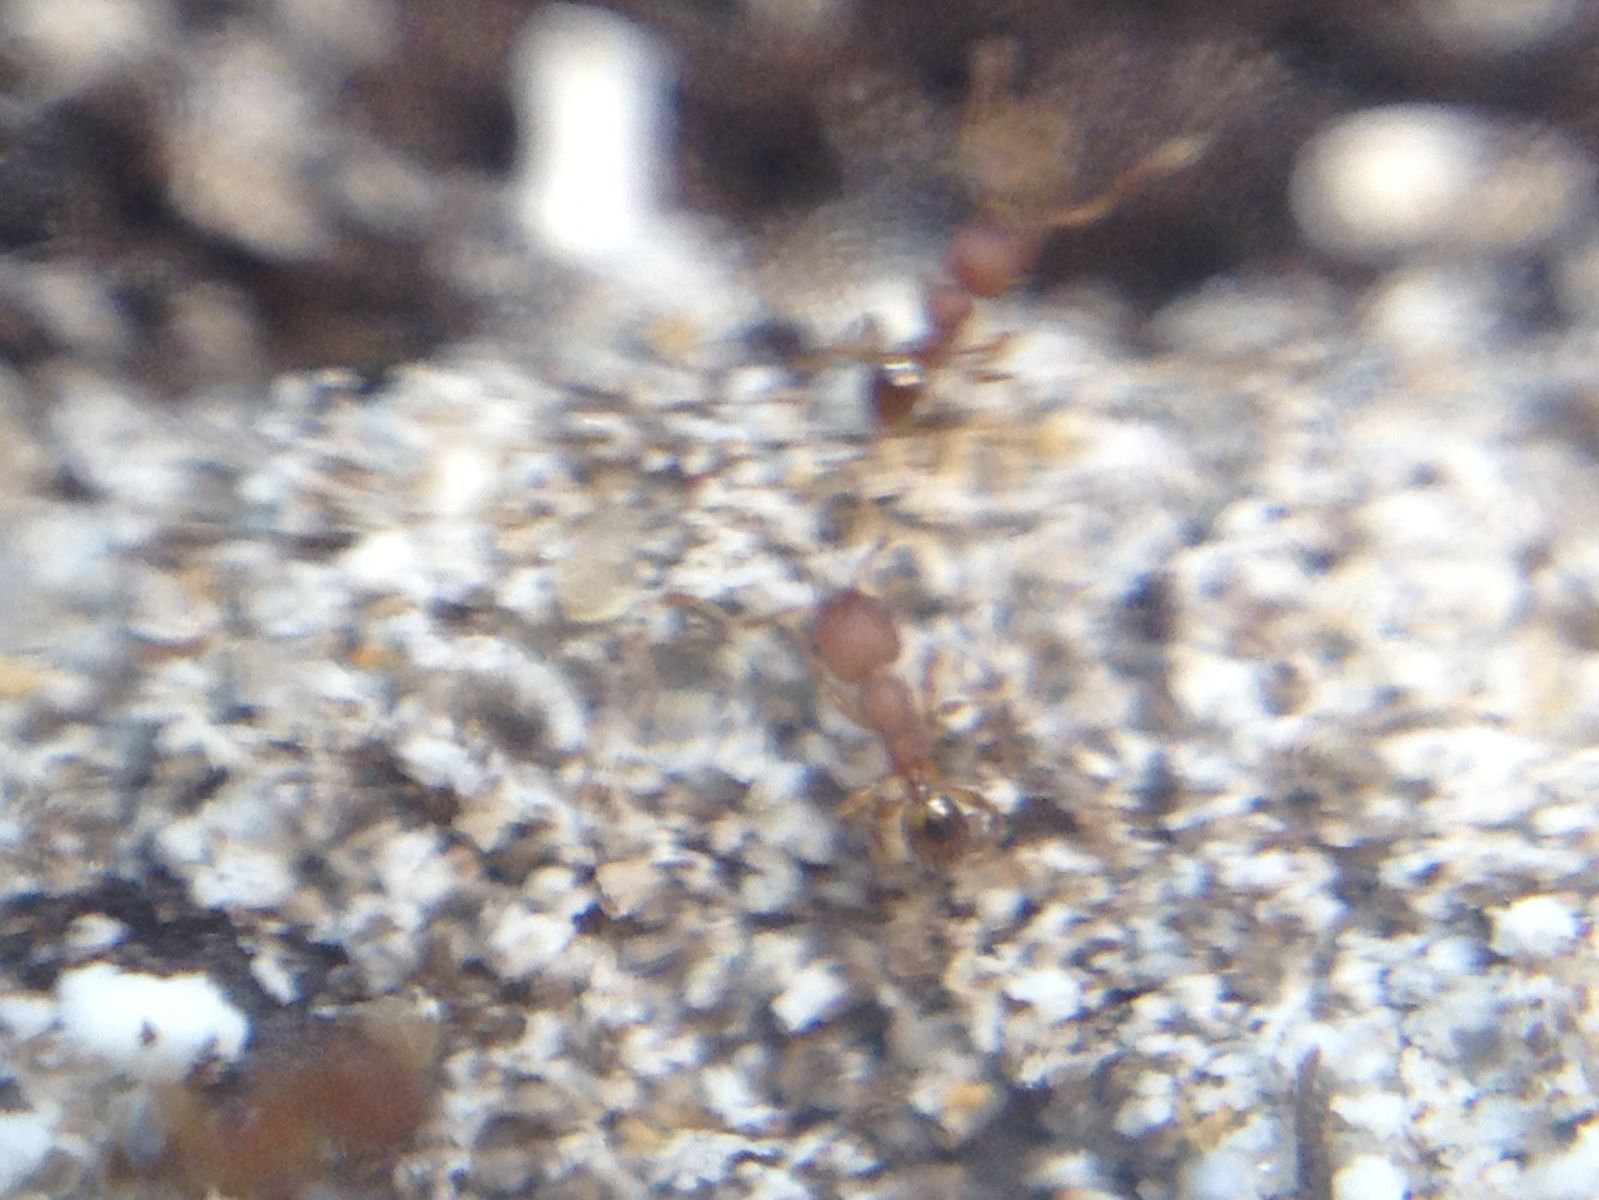 Ants on Mound